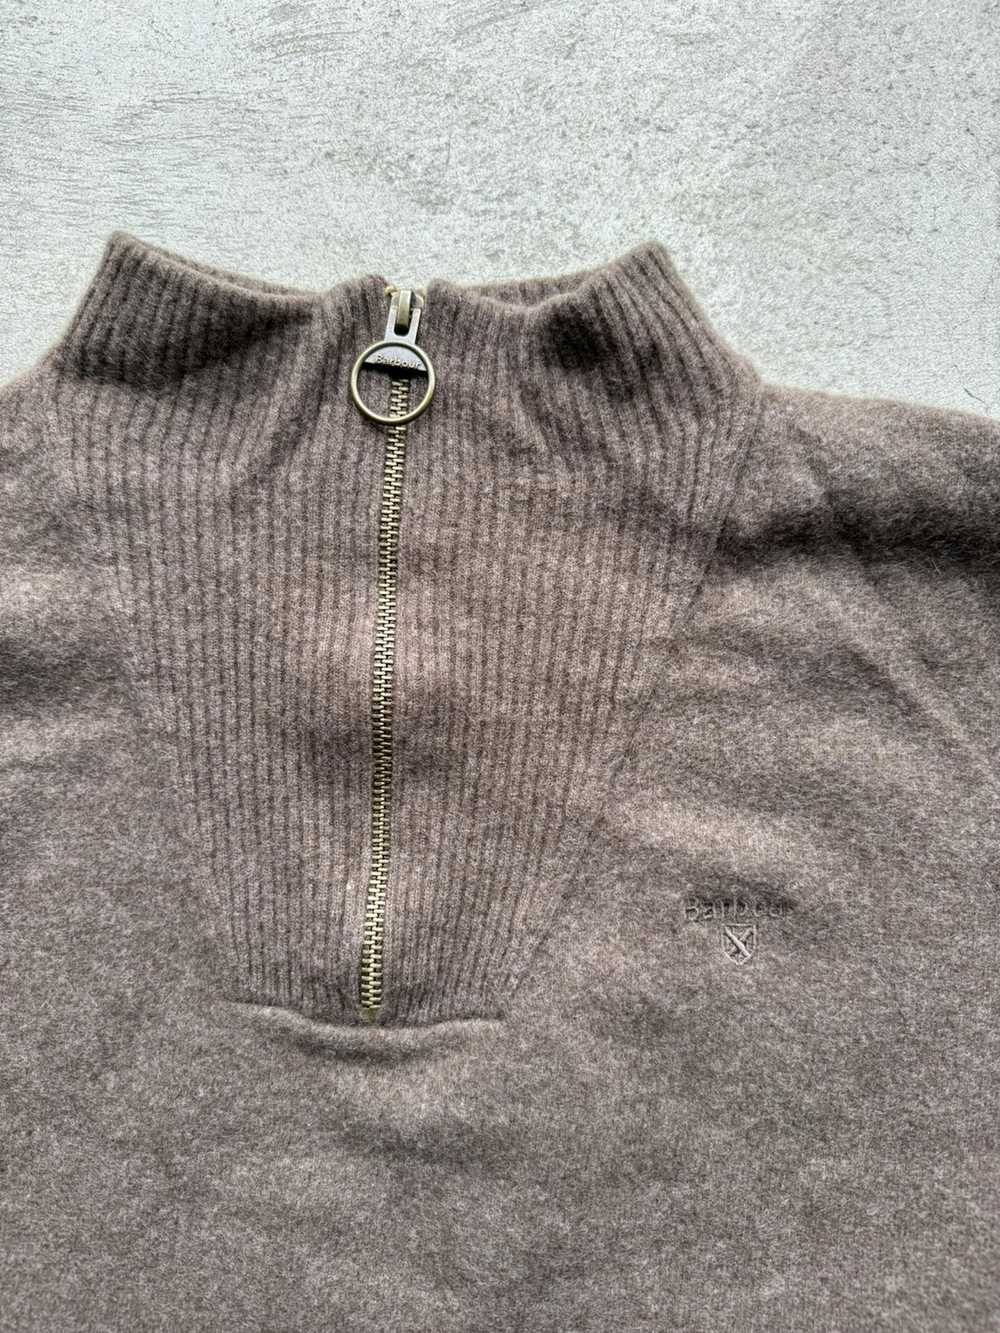 Barbour × Luxury Barbour Wool 1/4 Zip Sweater - image 3